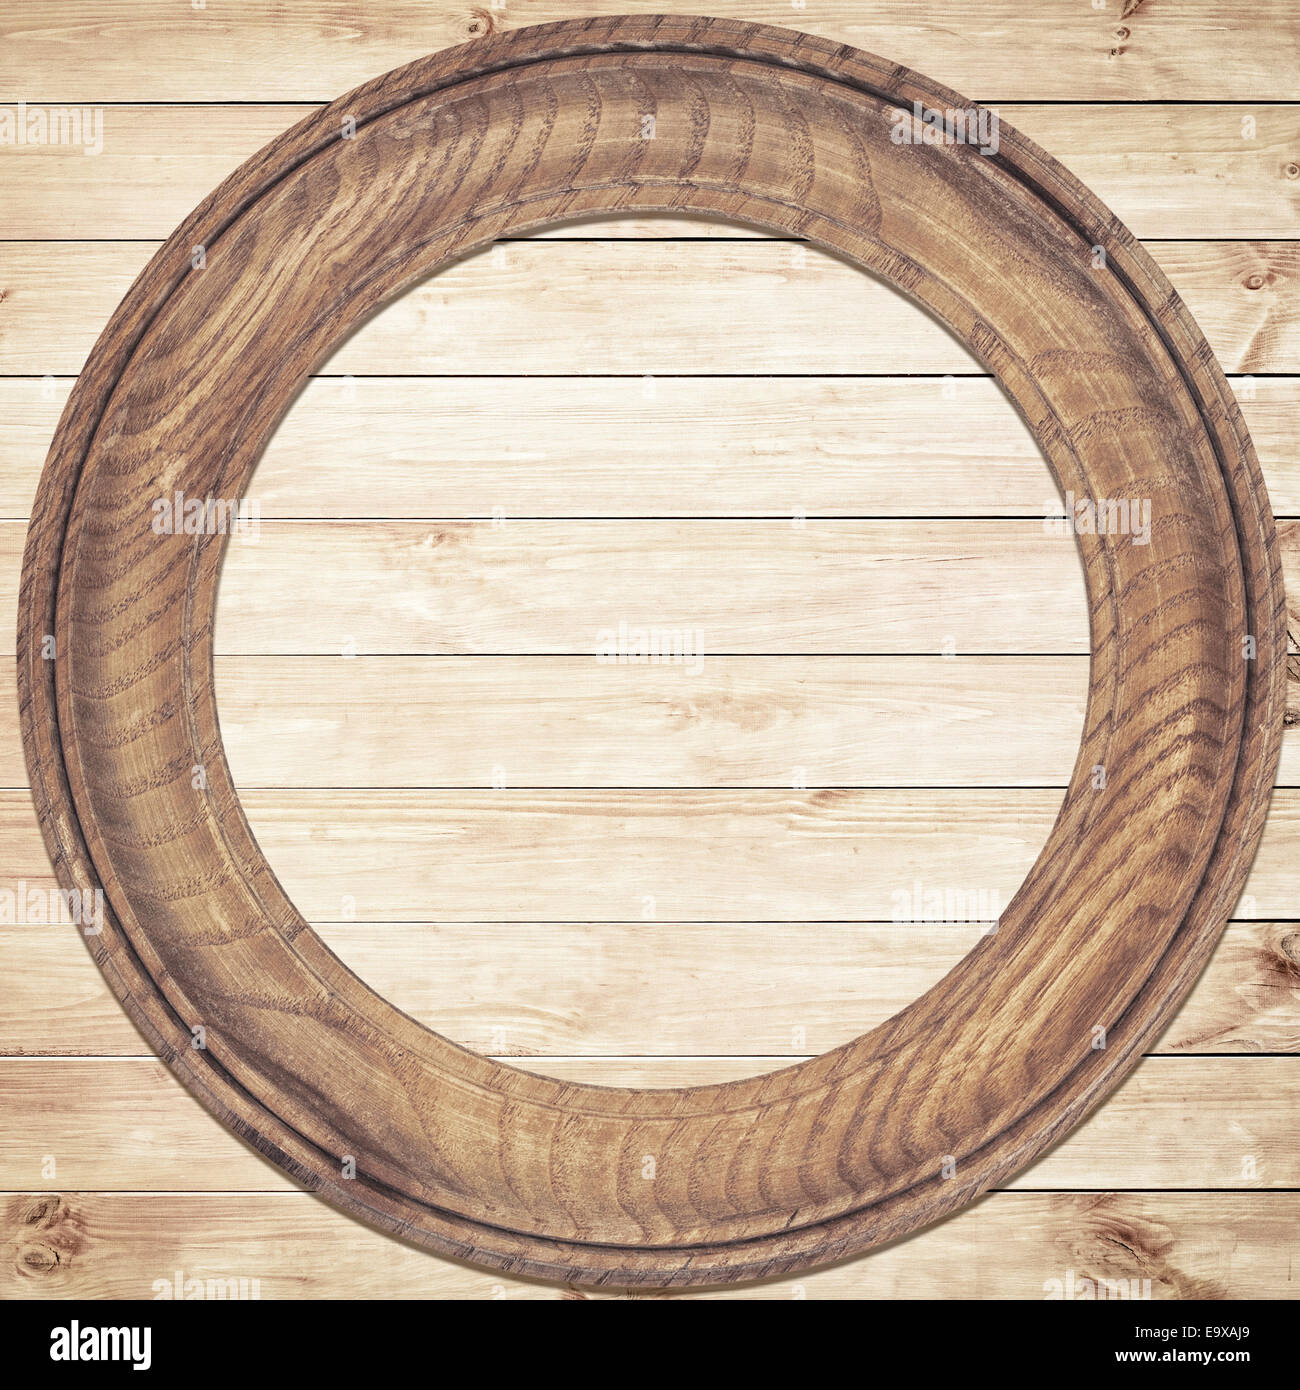 Khung tròn gỗ: Khung tròn gỗ được thiết kế tỉ mỉ, với chất liệu gỗ tự nhiên bền bỉ. Đây là lựa chọn hoàn hảo cho những ai đam mê trang trí và sử dụng đồ nội thất độc đáo và đẹp mắt.